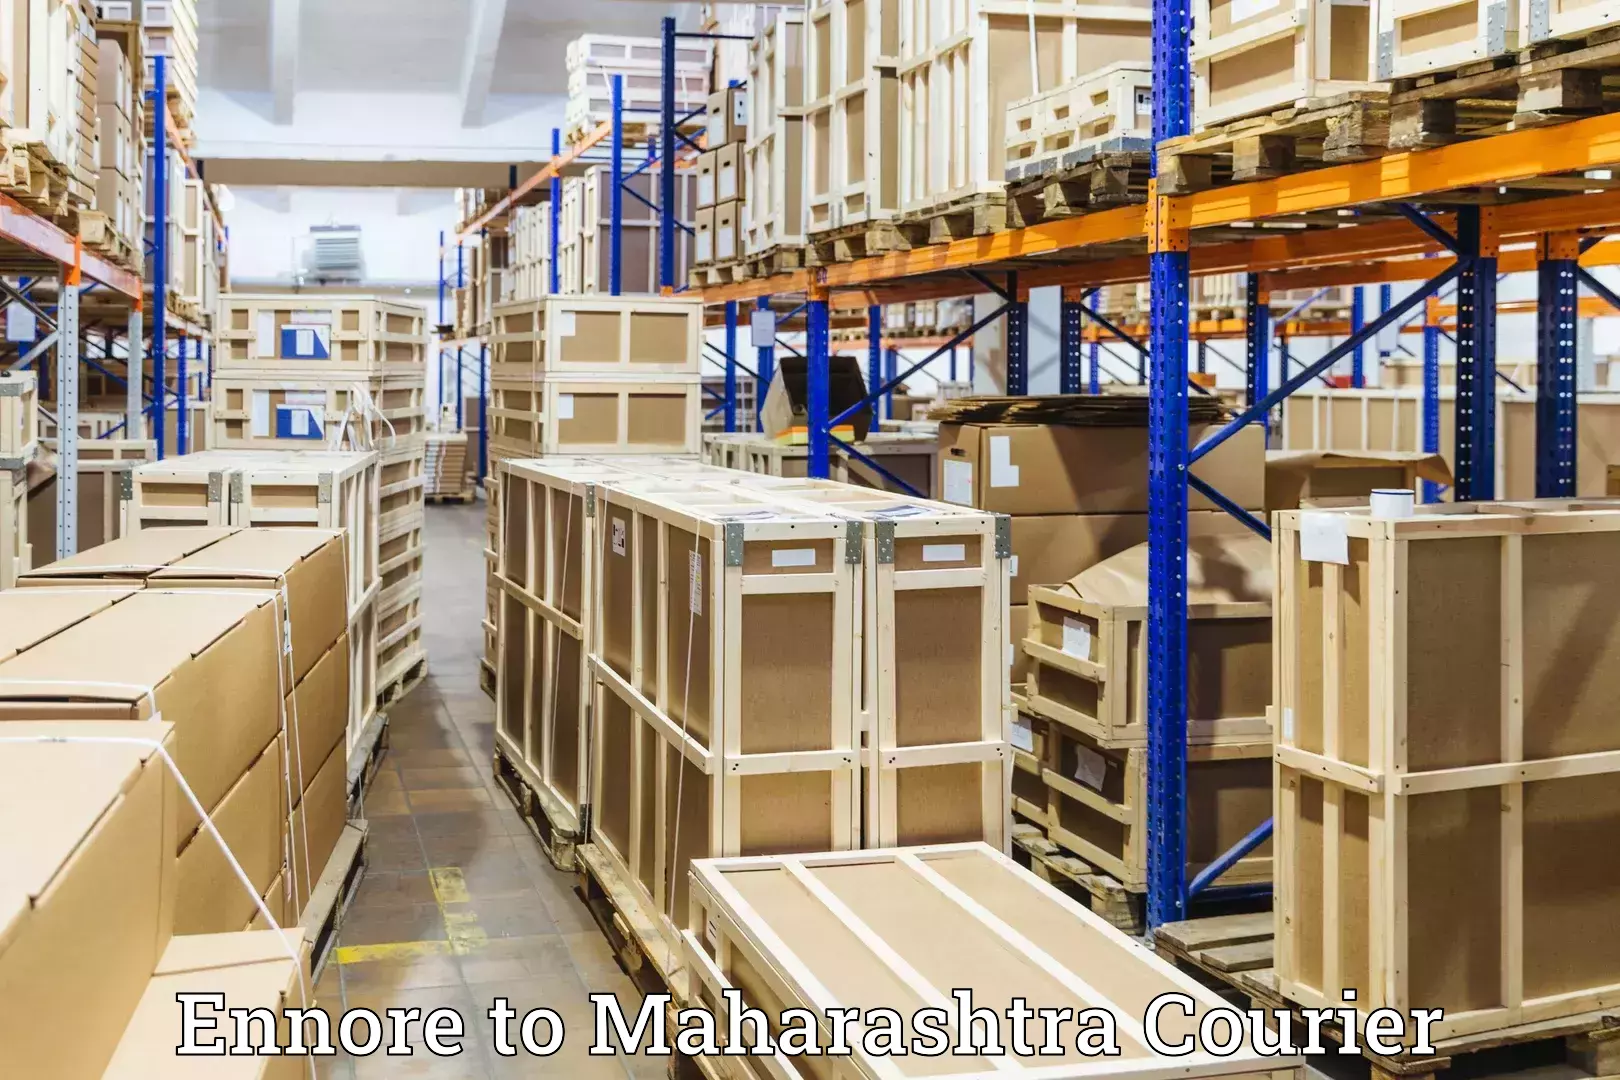 Luggage transport company Ennore to Maharashtra